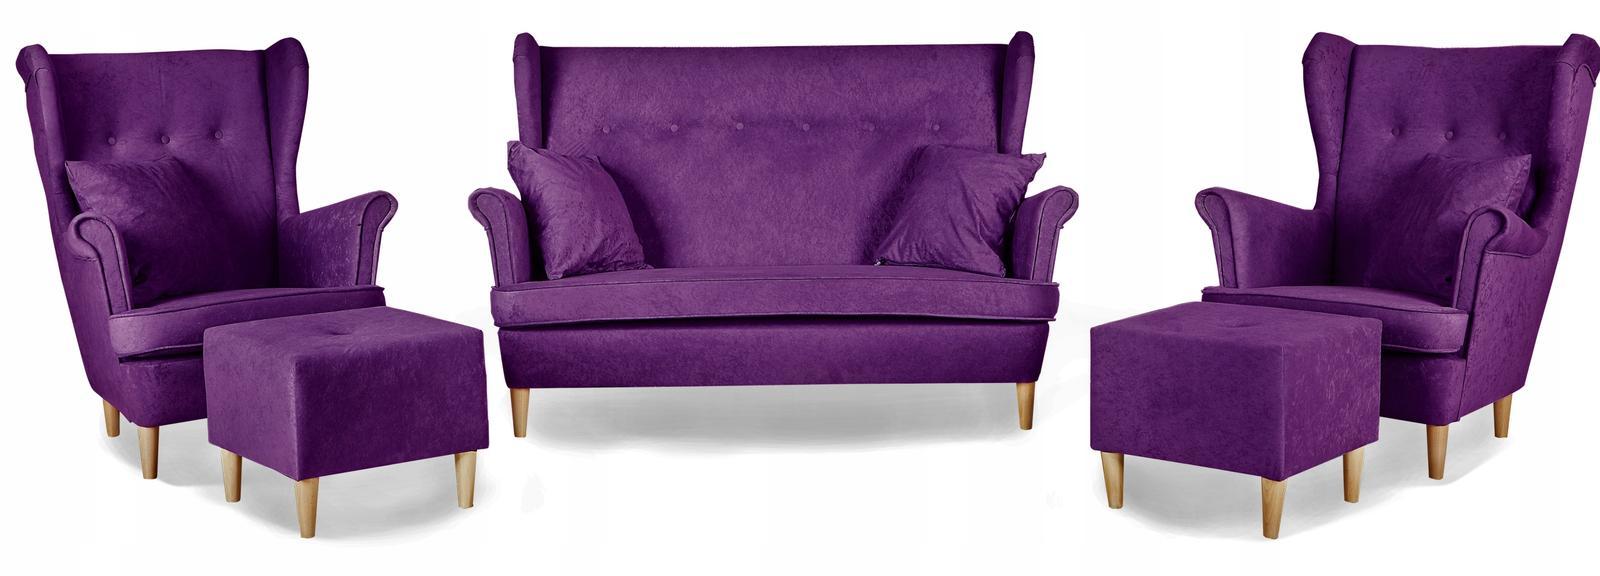 Zestaw wypoczynkowy mebli ARI 149x104x92 cm uszak sofa fotele pufy do salonu Mirofaza fioletowy 0 Full Screen